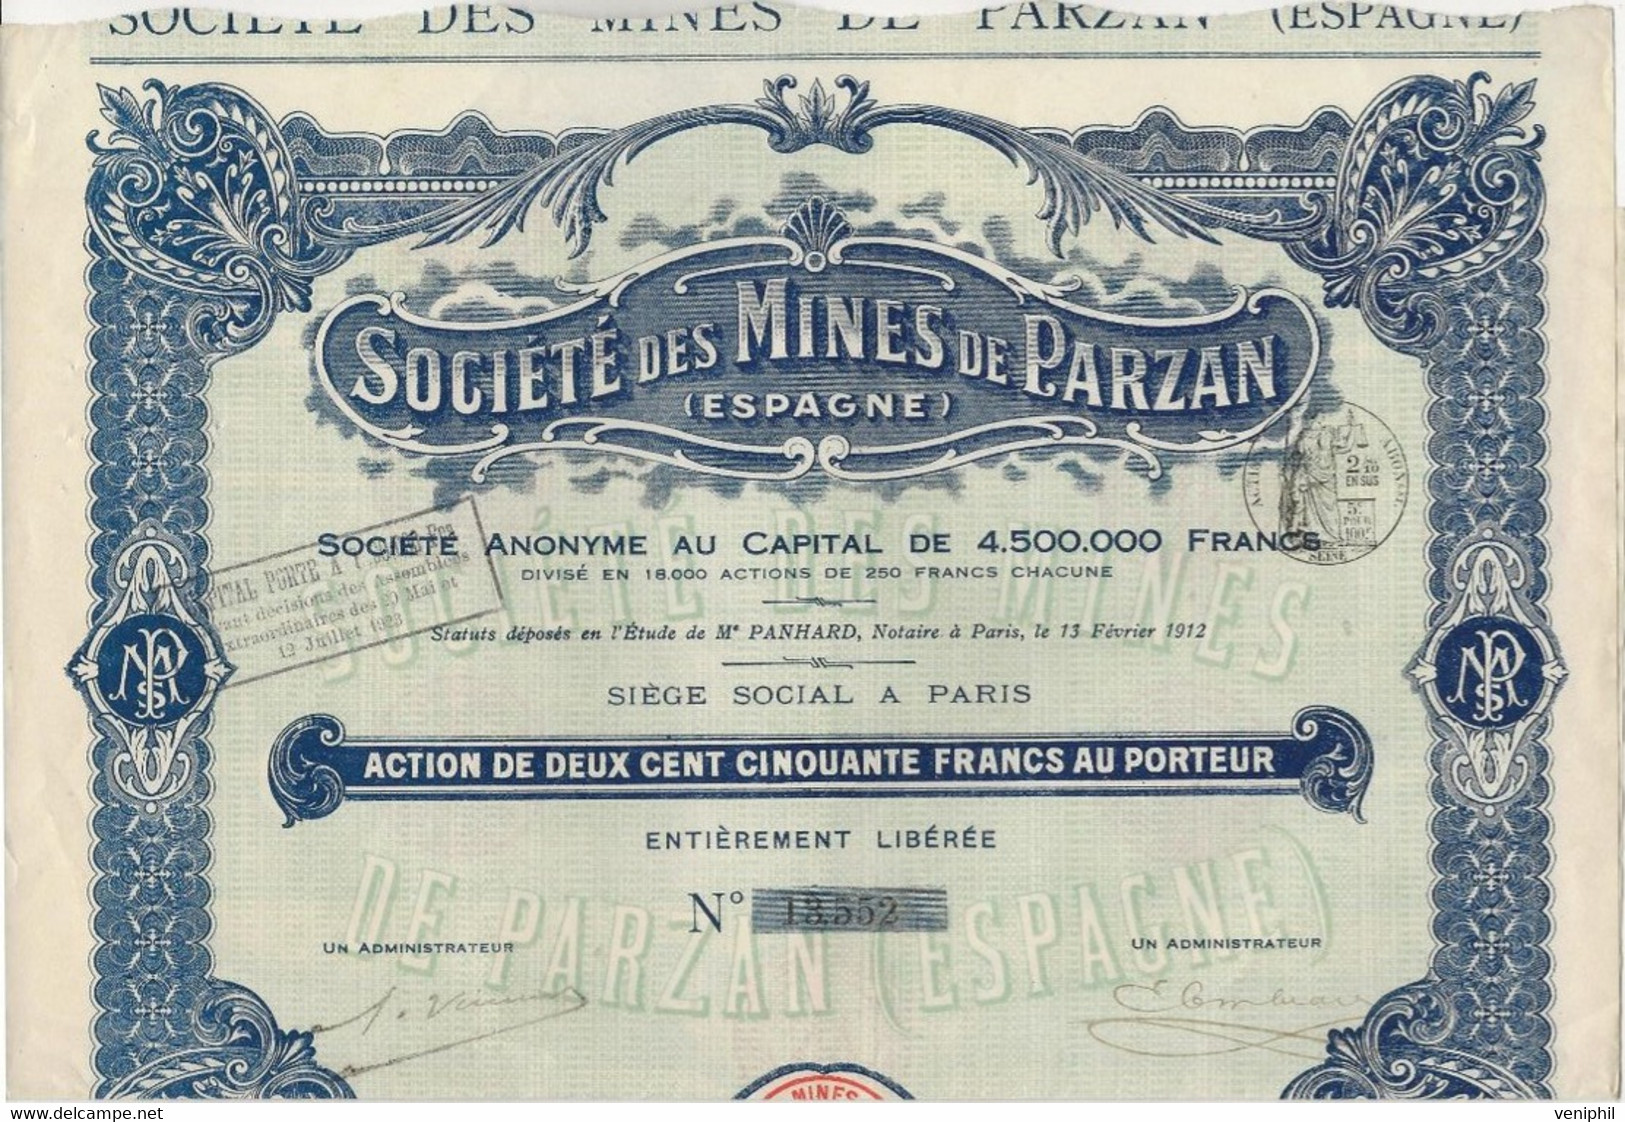 SOCIETE DE MINES DE PARZAN - ESPAGNE - ACTION DE 250 FRANCS  -1912 - Bergbau